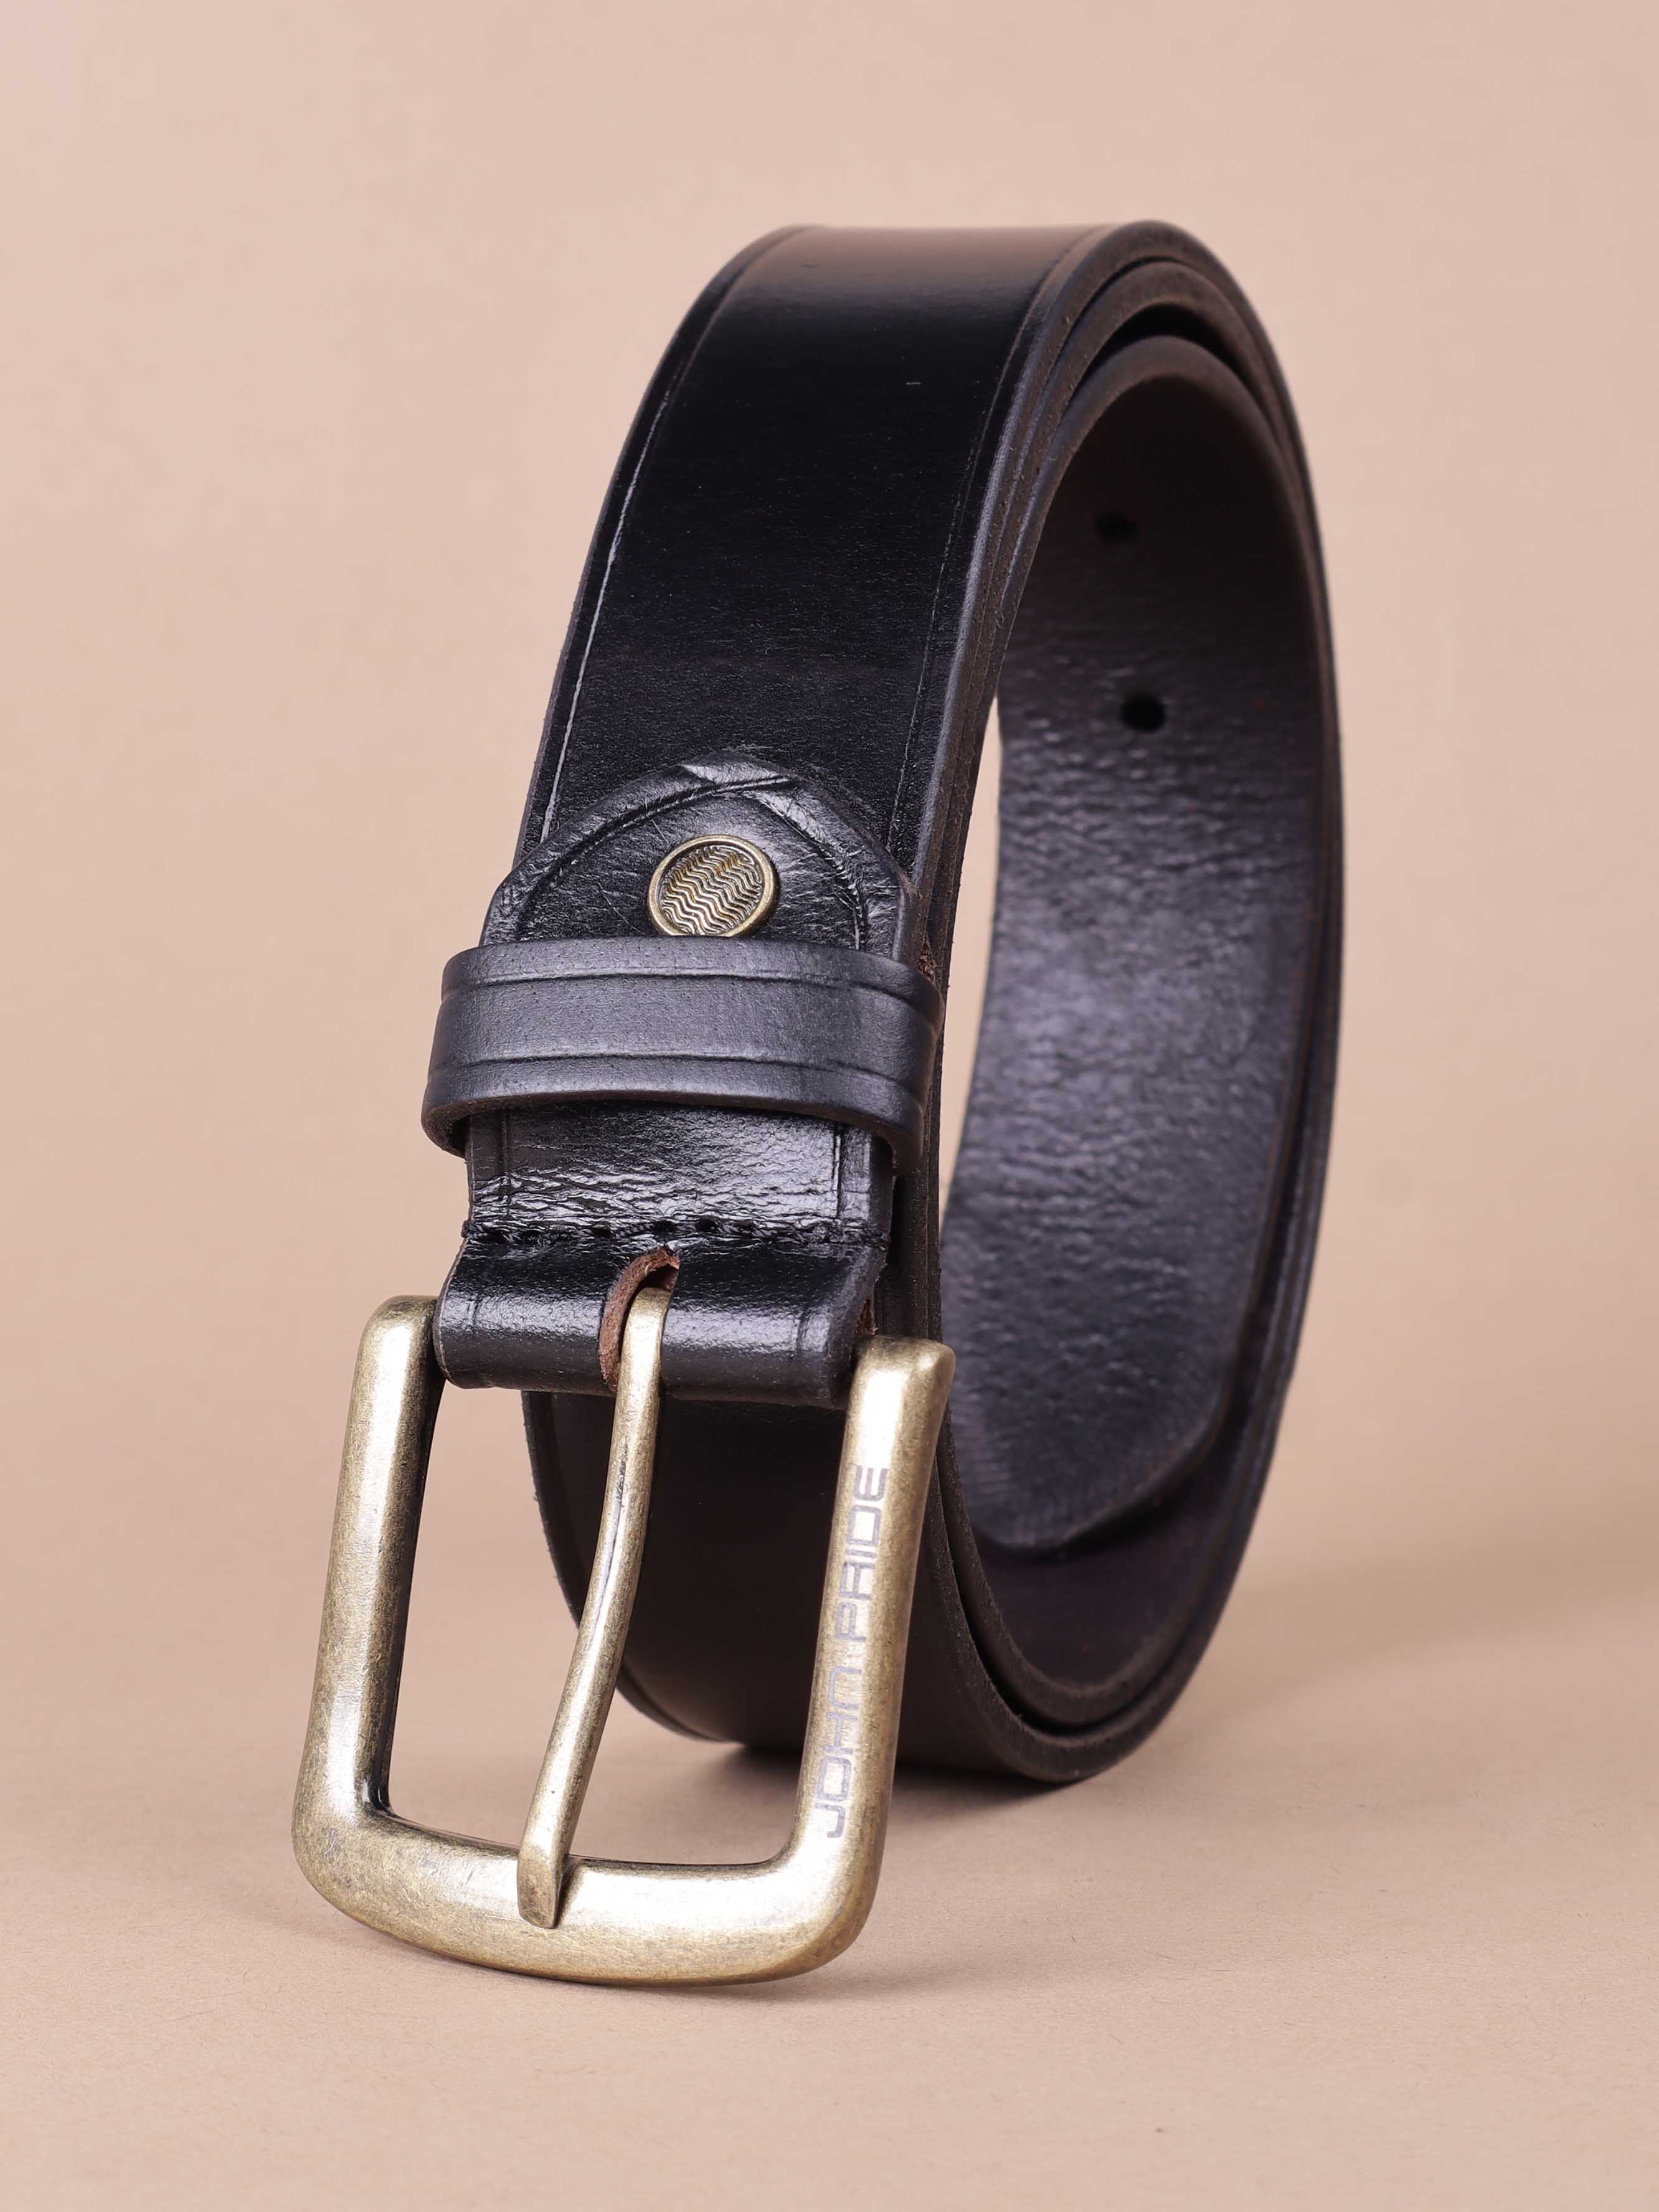 accessories/belts/JPBT1001/jpbt1001-1.jpg